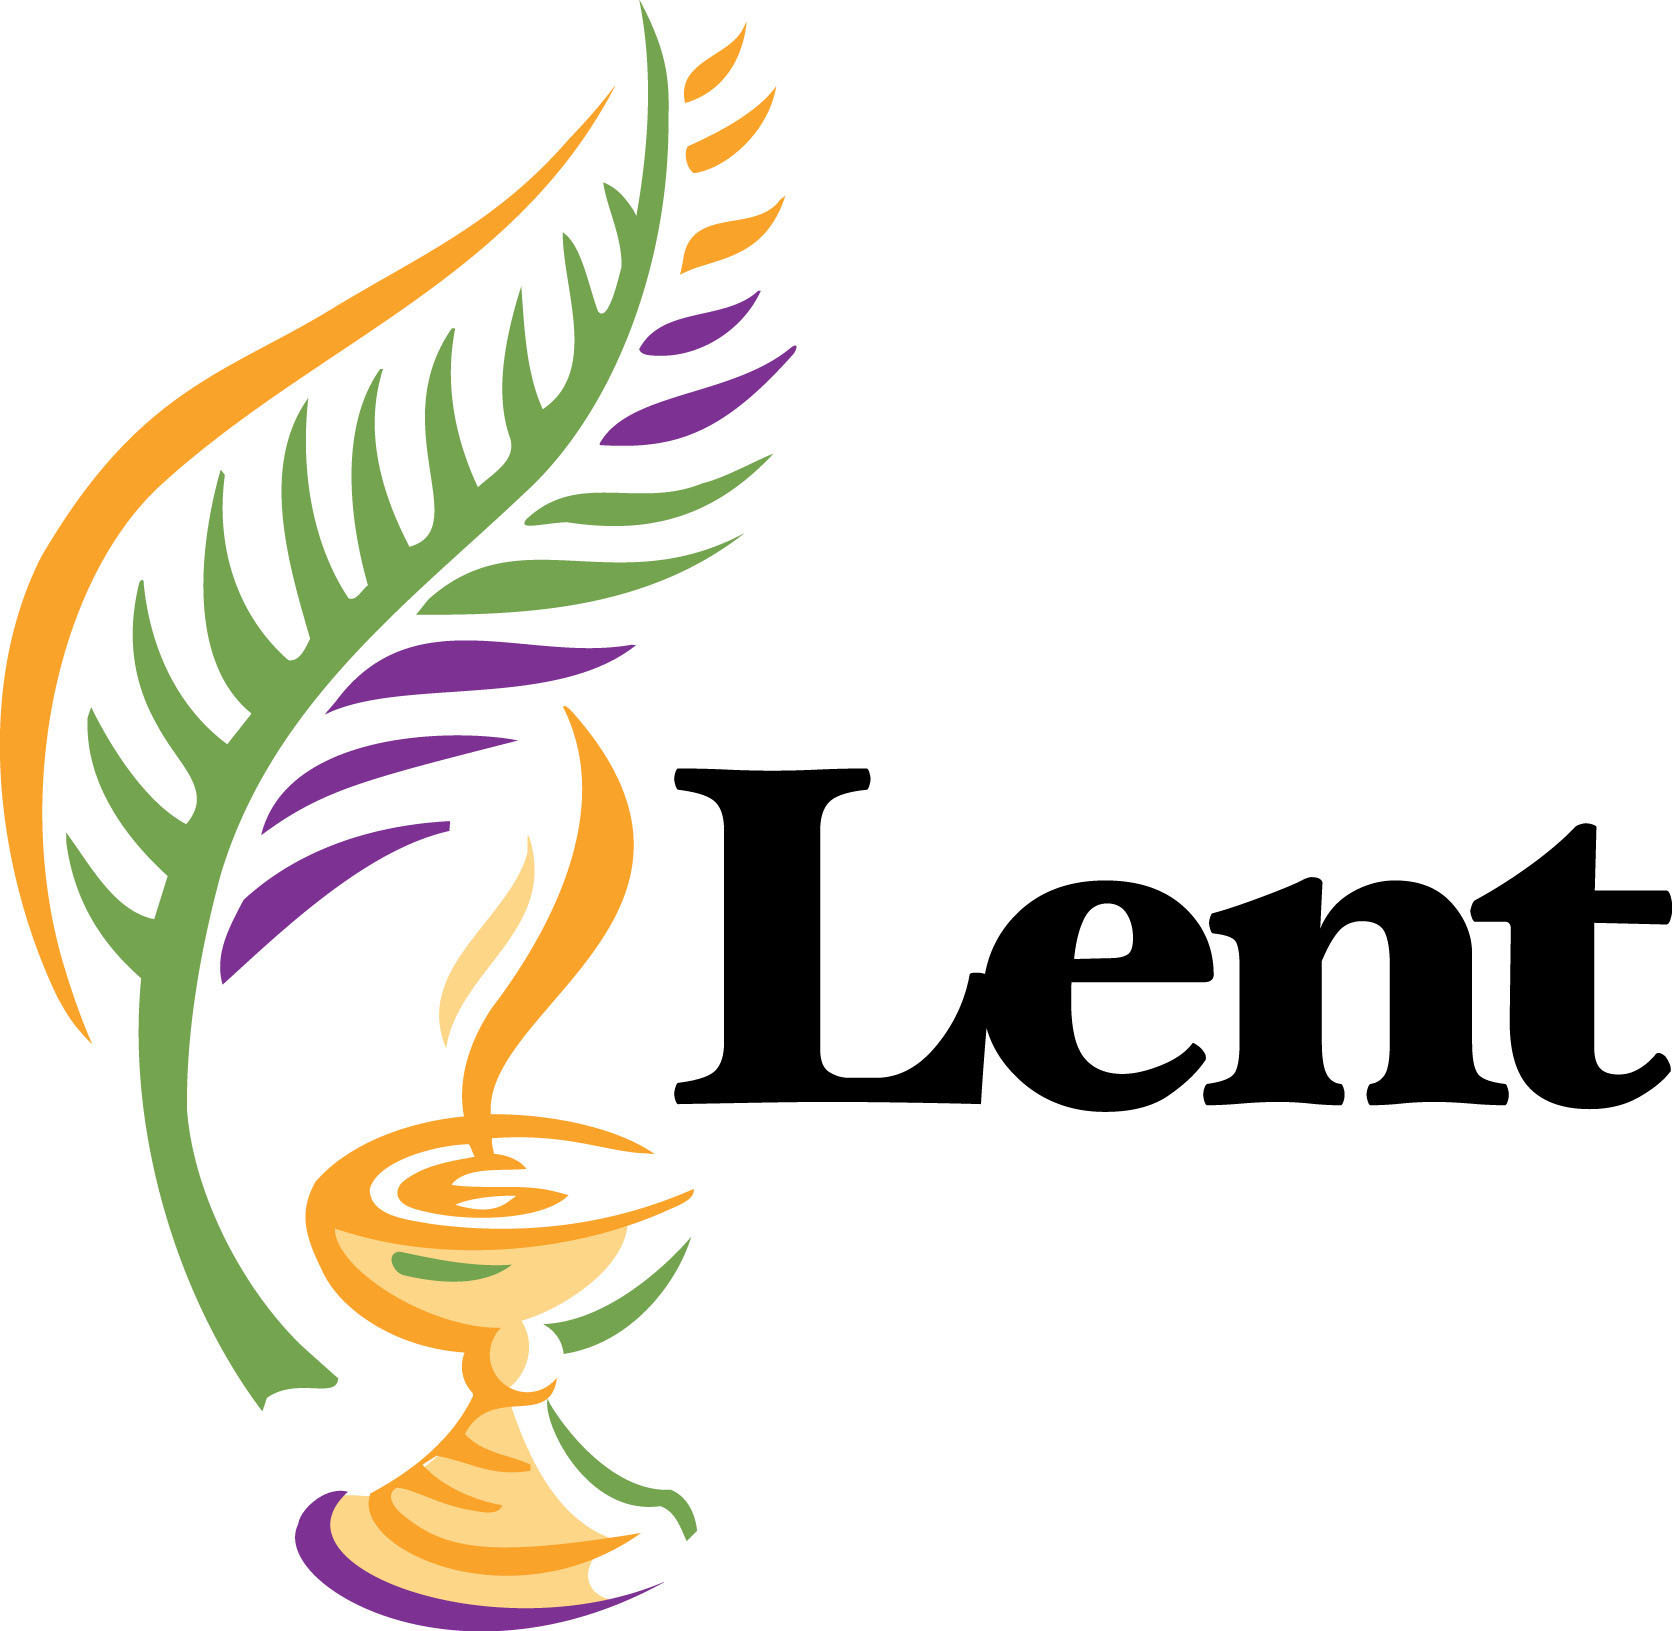 Catholic Lent Clip Art Free free image